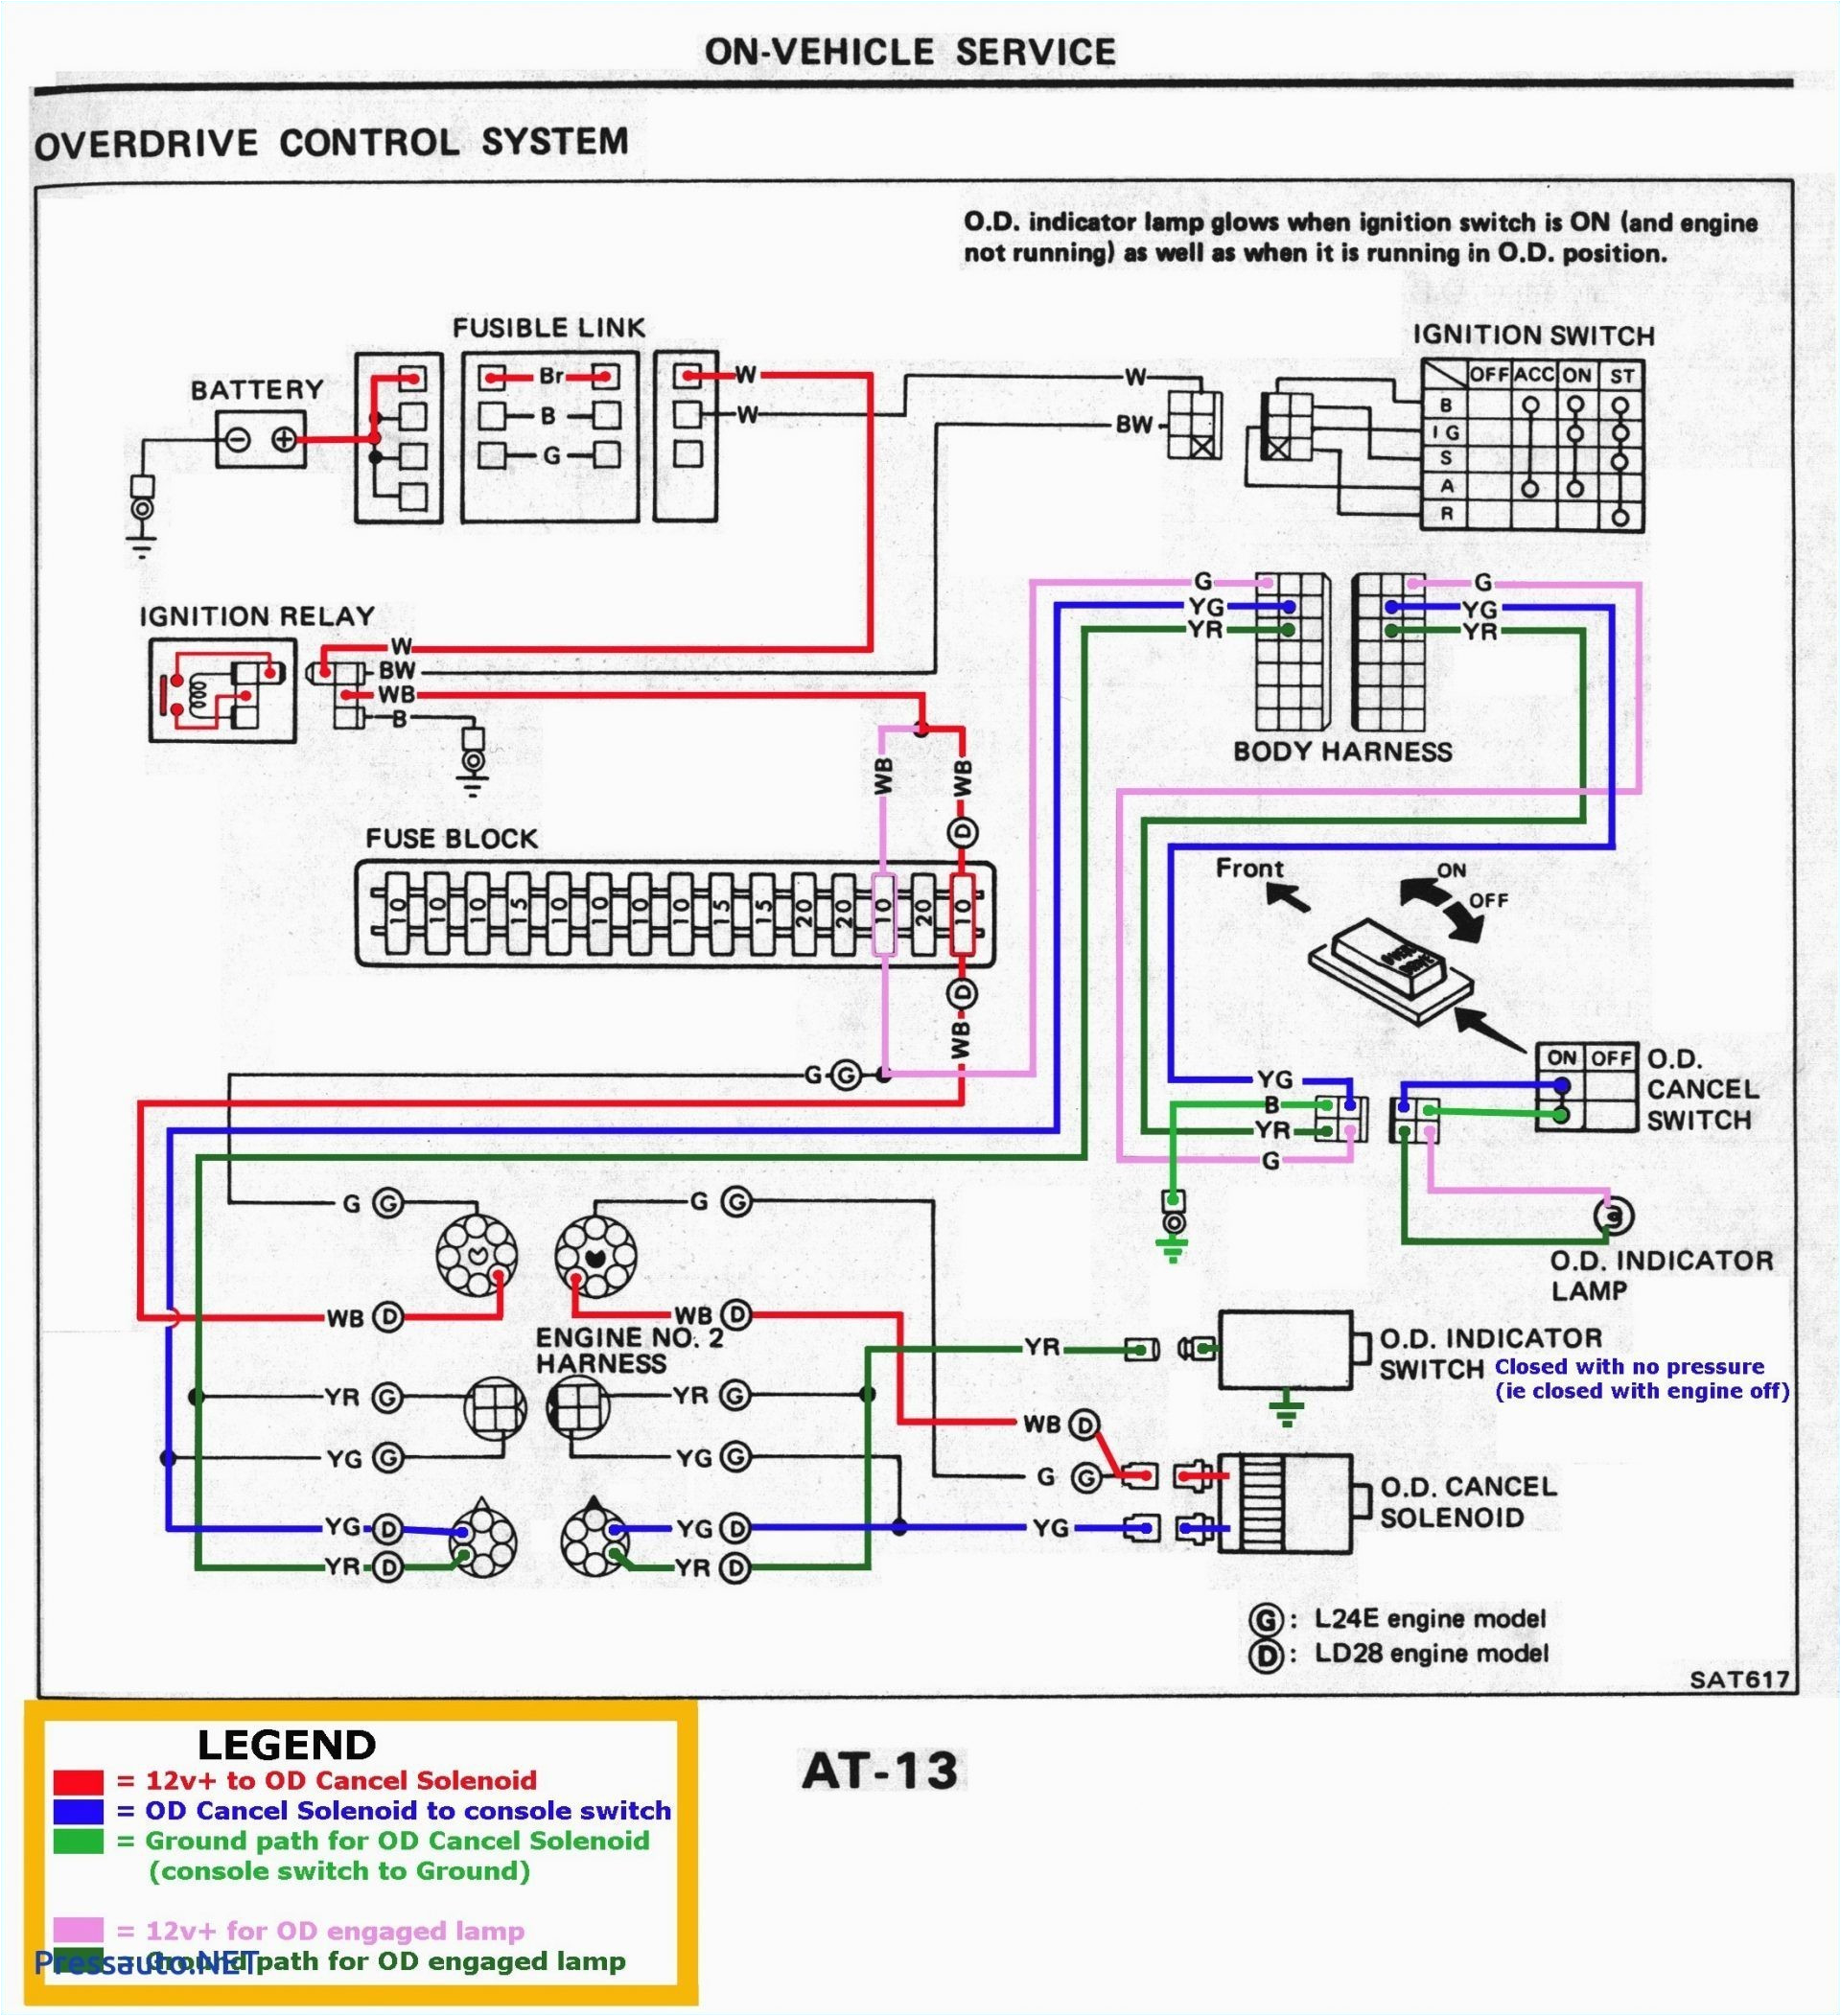 hogtunes amp wiring diagram wiring diagram hogtunes 24 2 amplifier wiring diagram schema wiring diagram2005 gm